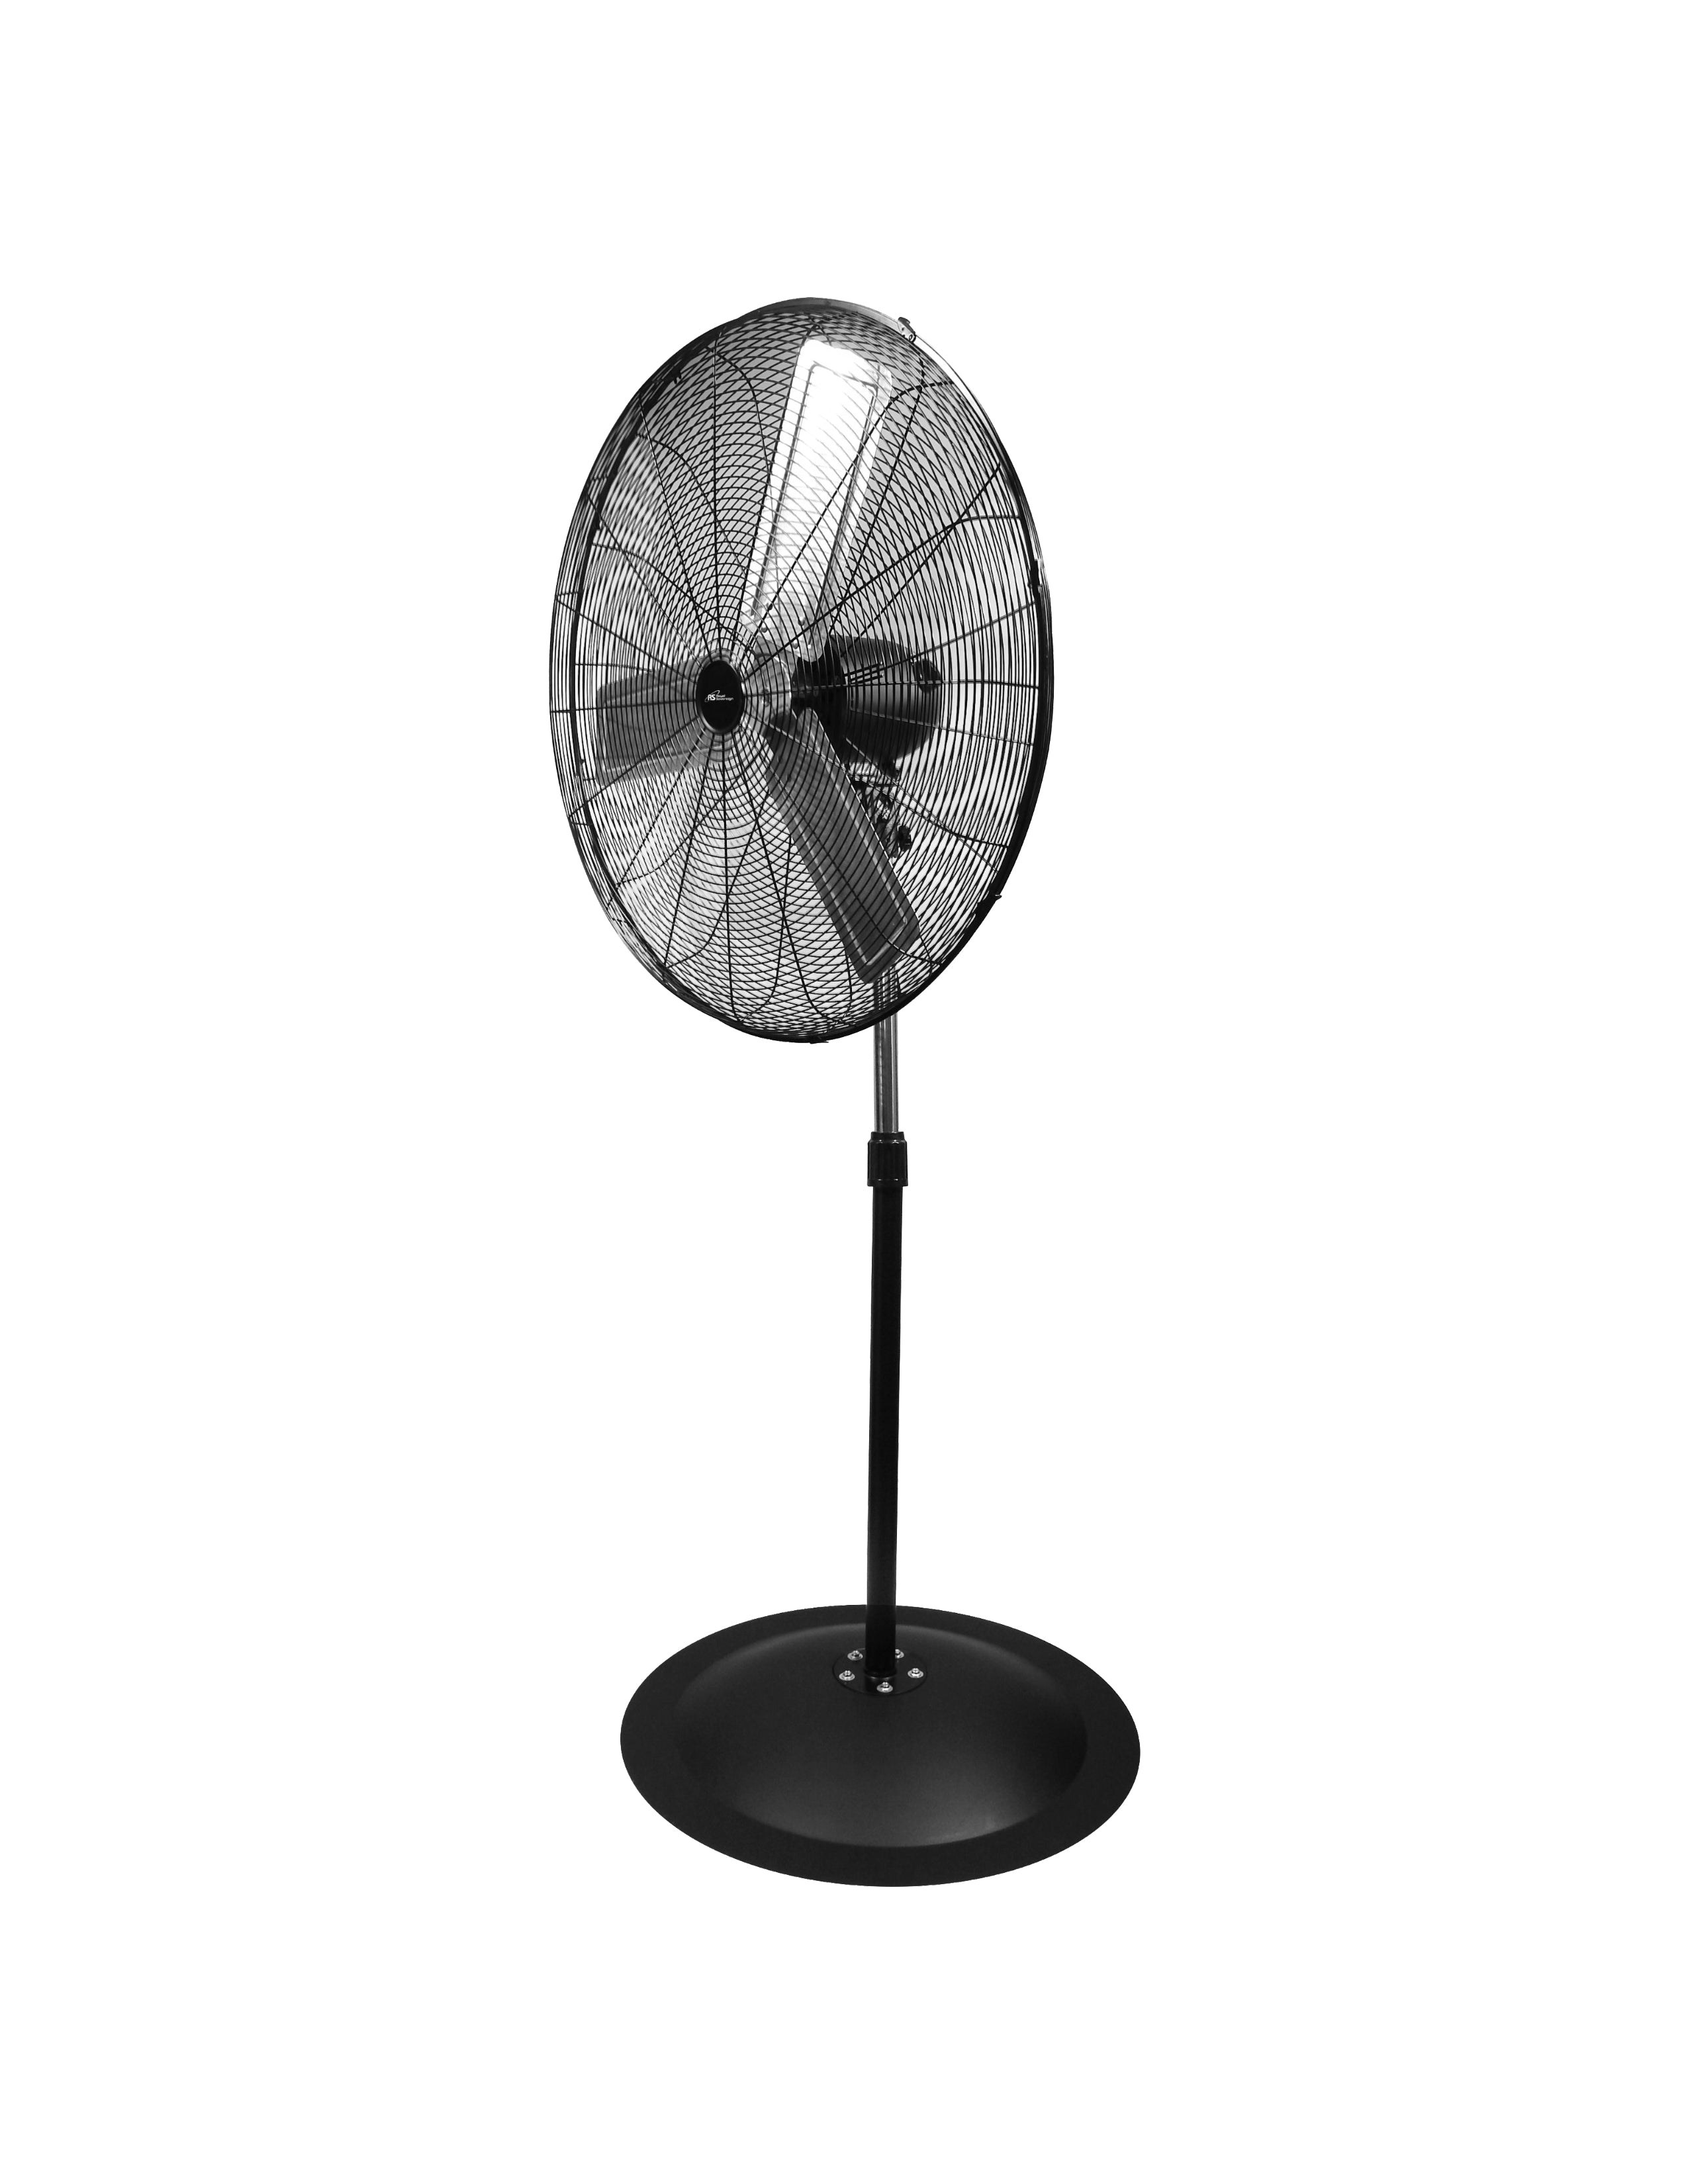 PFNC-30/ 30” High Velocity Oscillating Pedestal Fan, 8400 CFM